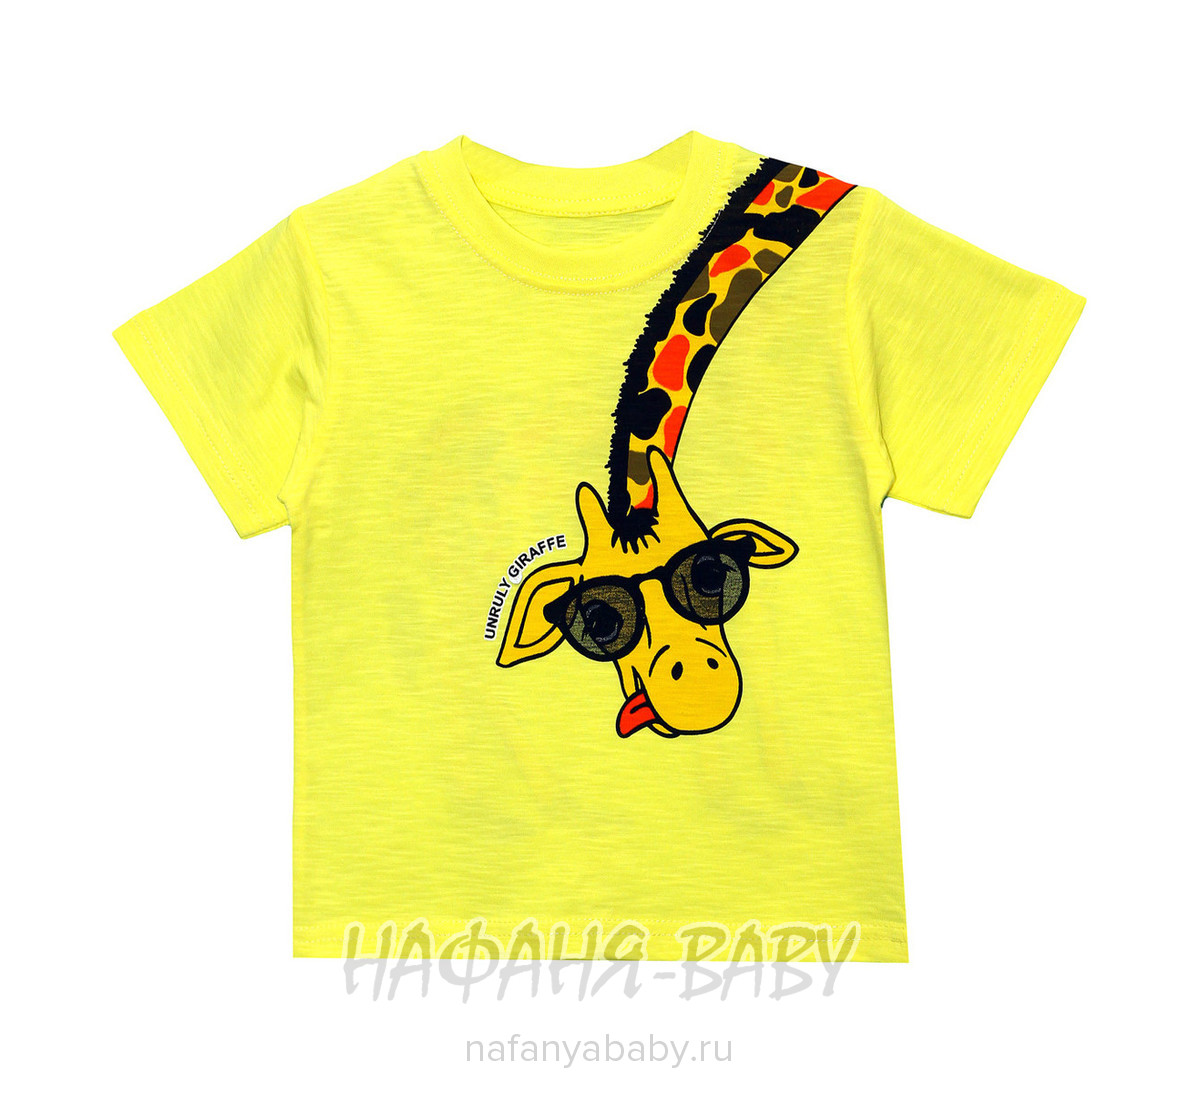 Детская футболка UNRULY арт: 3119, 5-9 лет, 1-4 года, оптом Турция